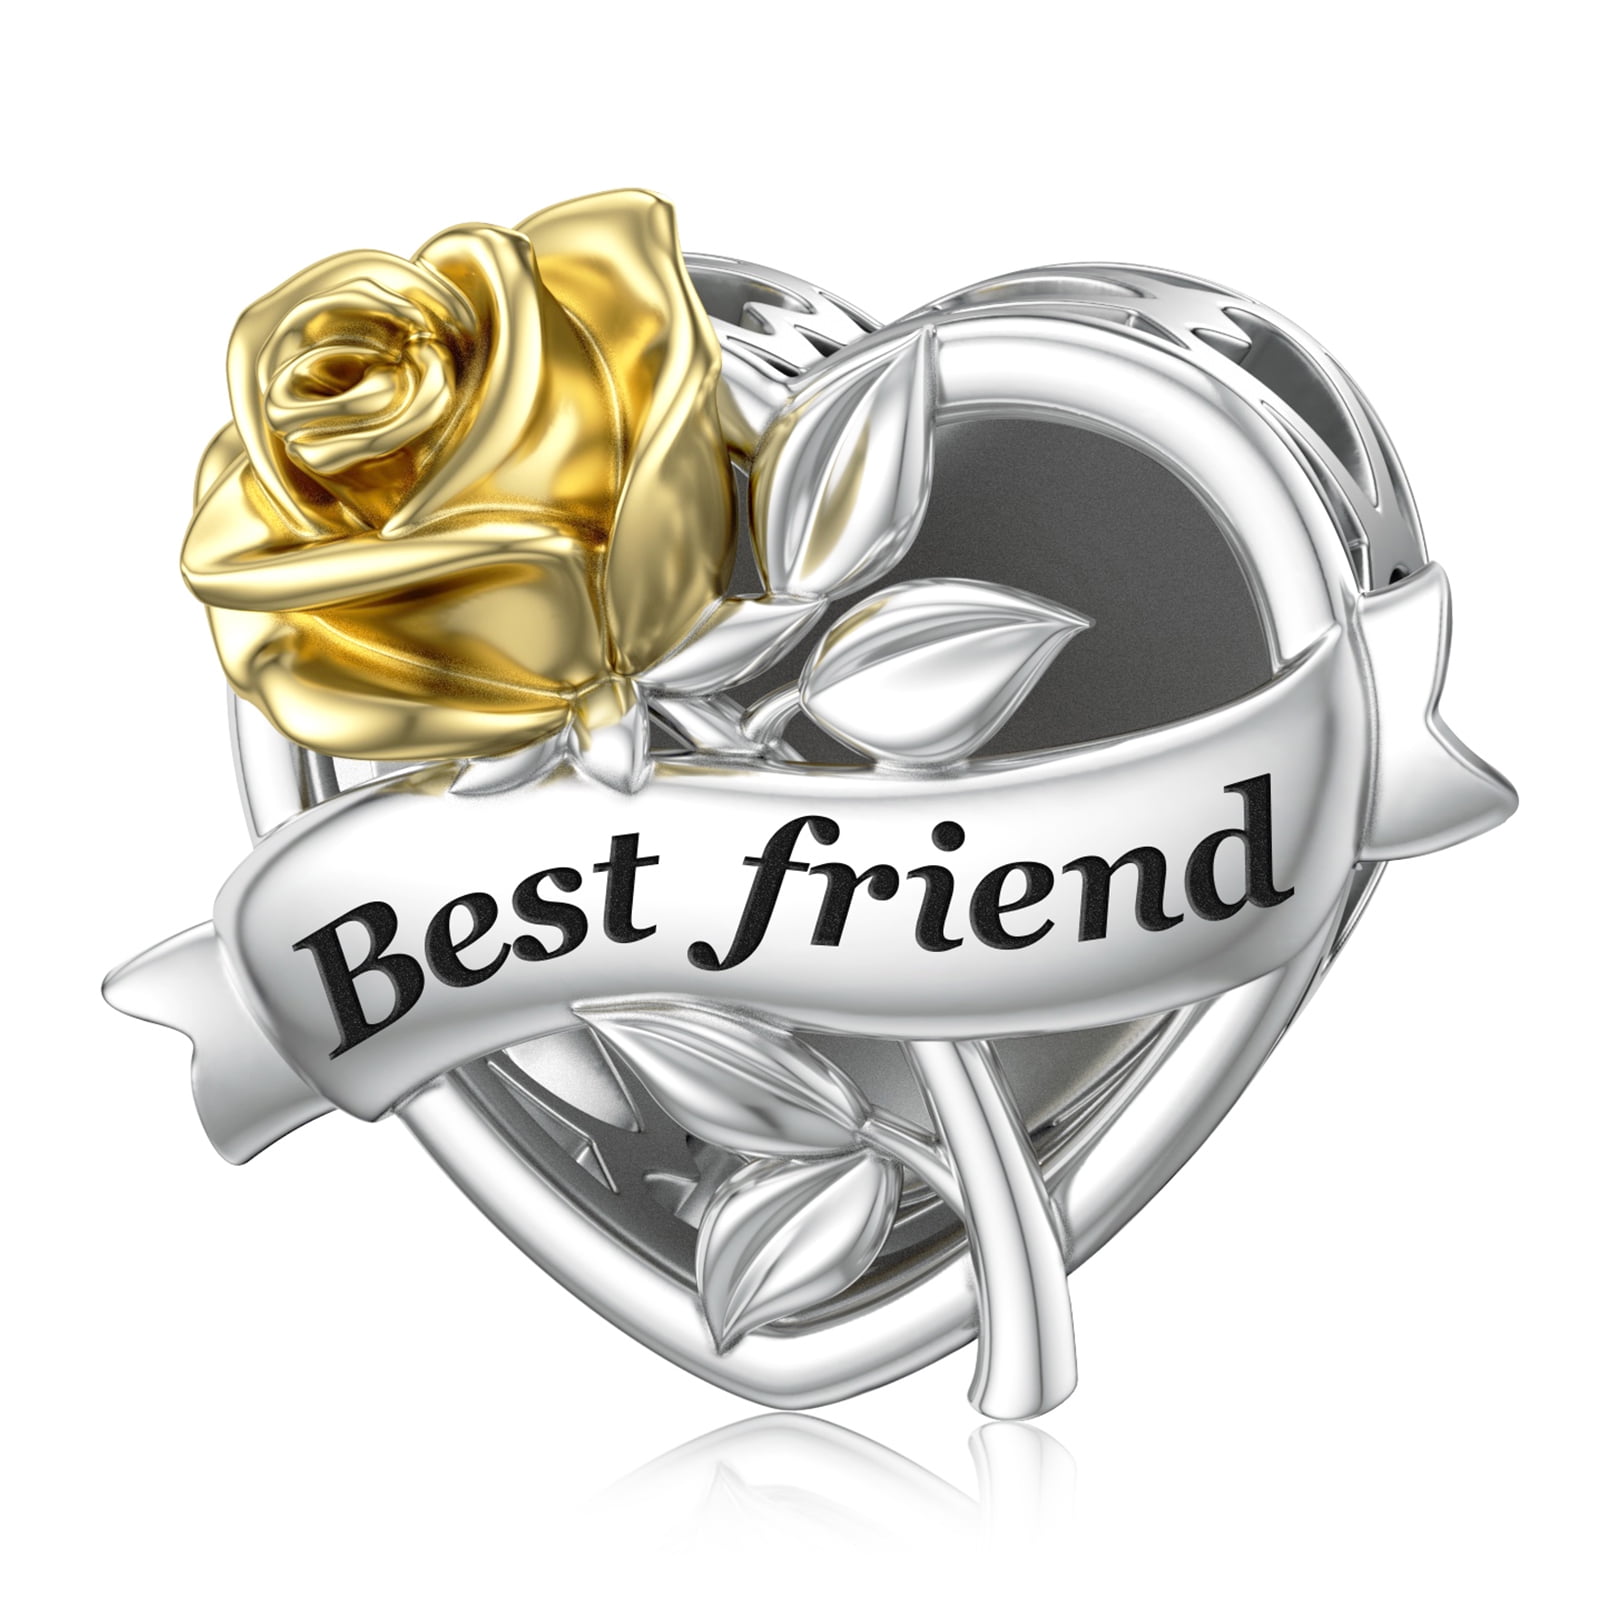 JIAYIQI Best Friend Charms Fit Charm Bracelet Birthday Friendship